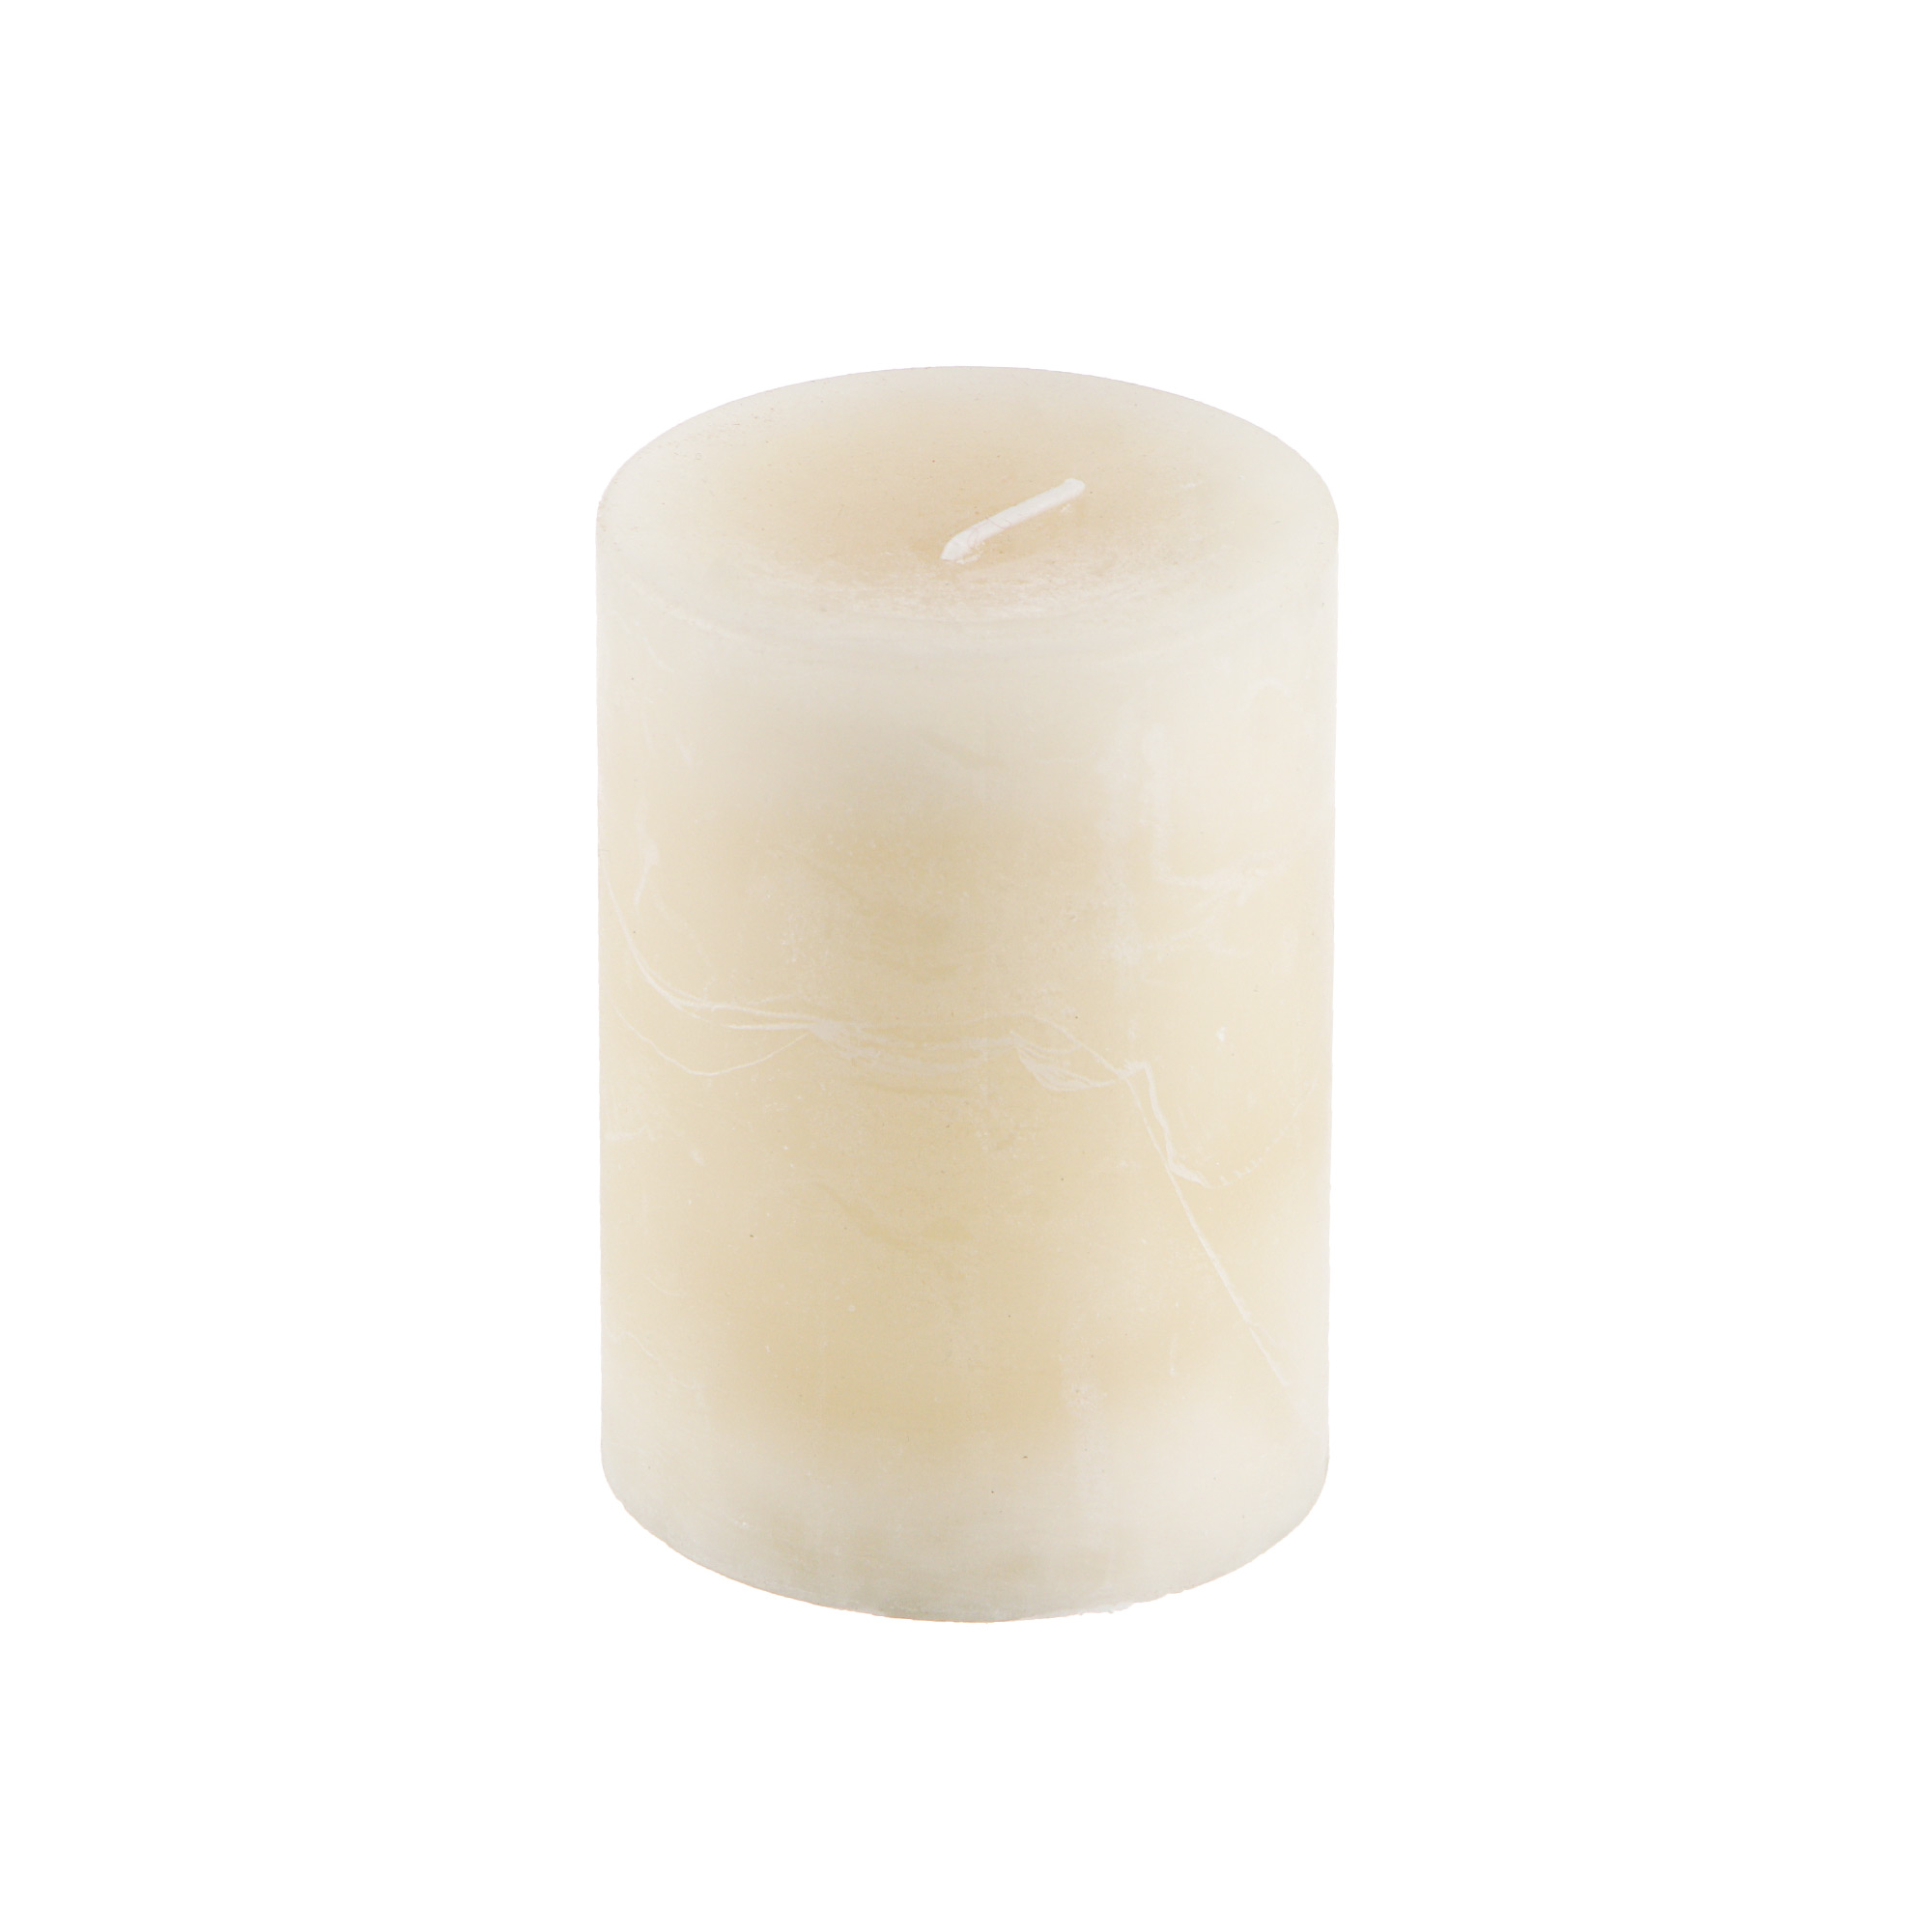 Свеча Sunford ароматическая ваниль 6.8х9.5 см свеча ароматическая гиацинт sunford 6 8х10см зеленая